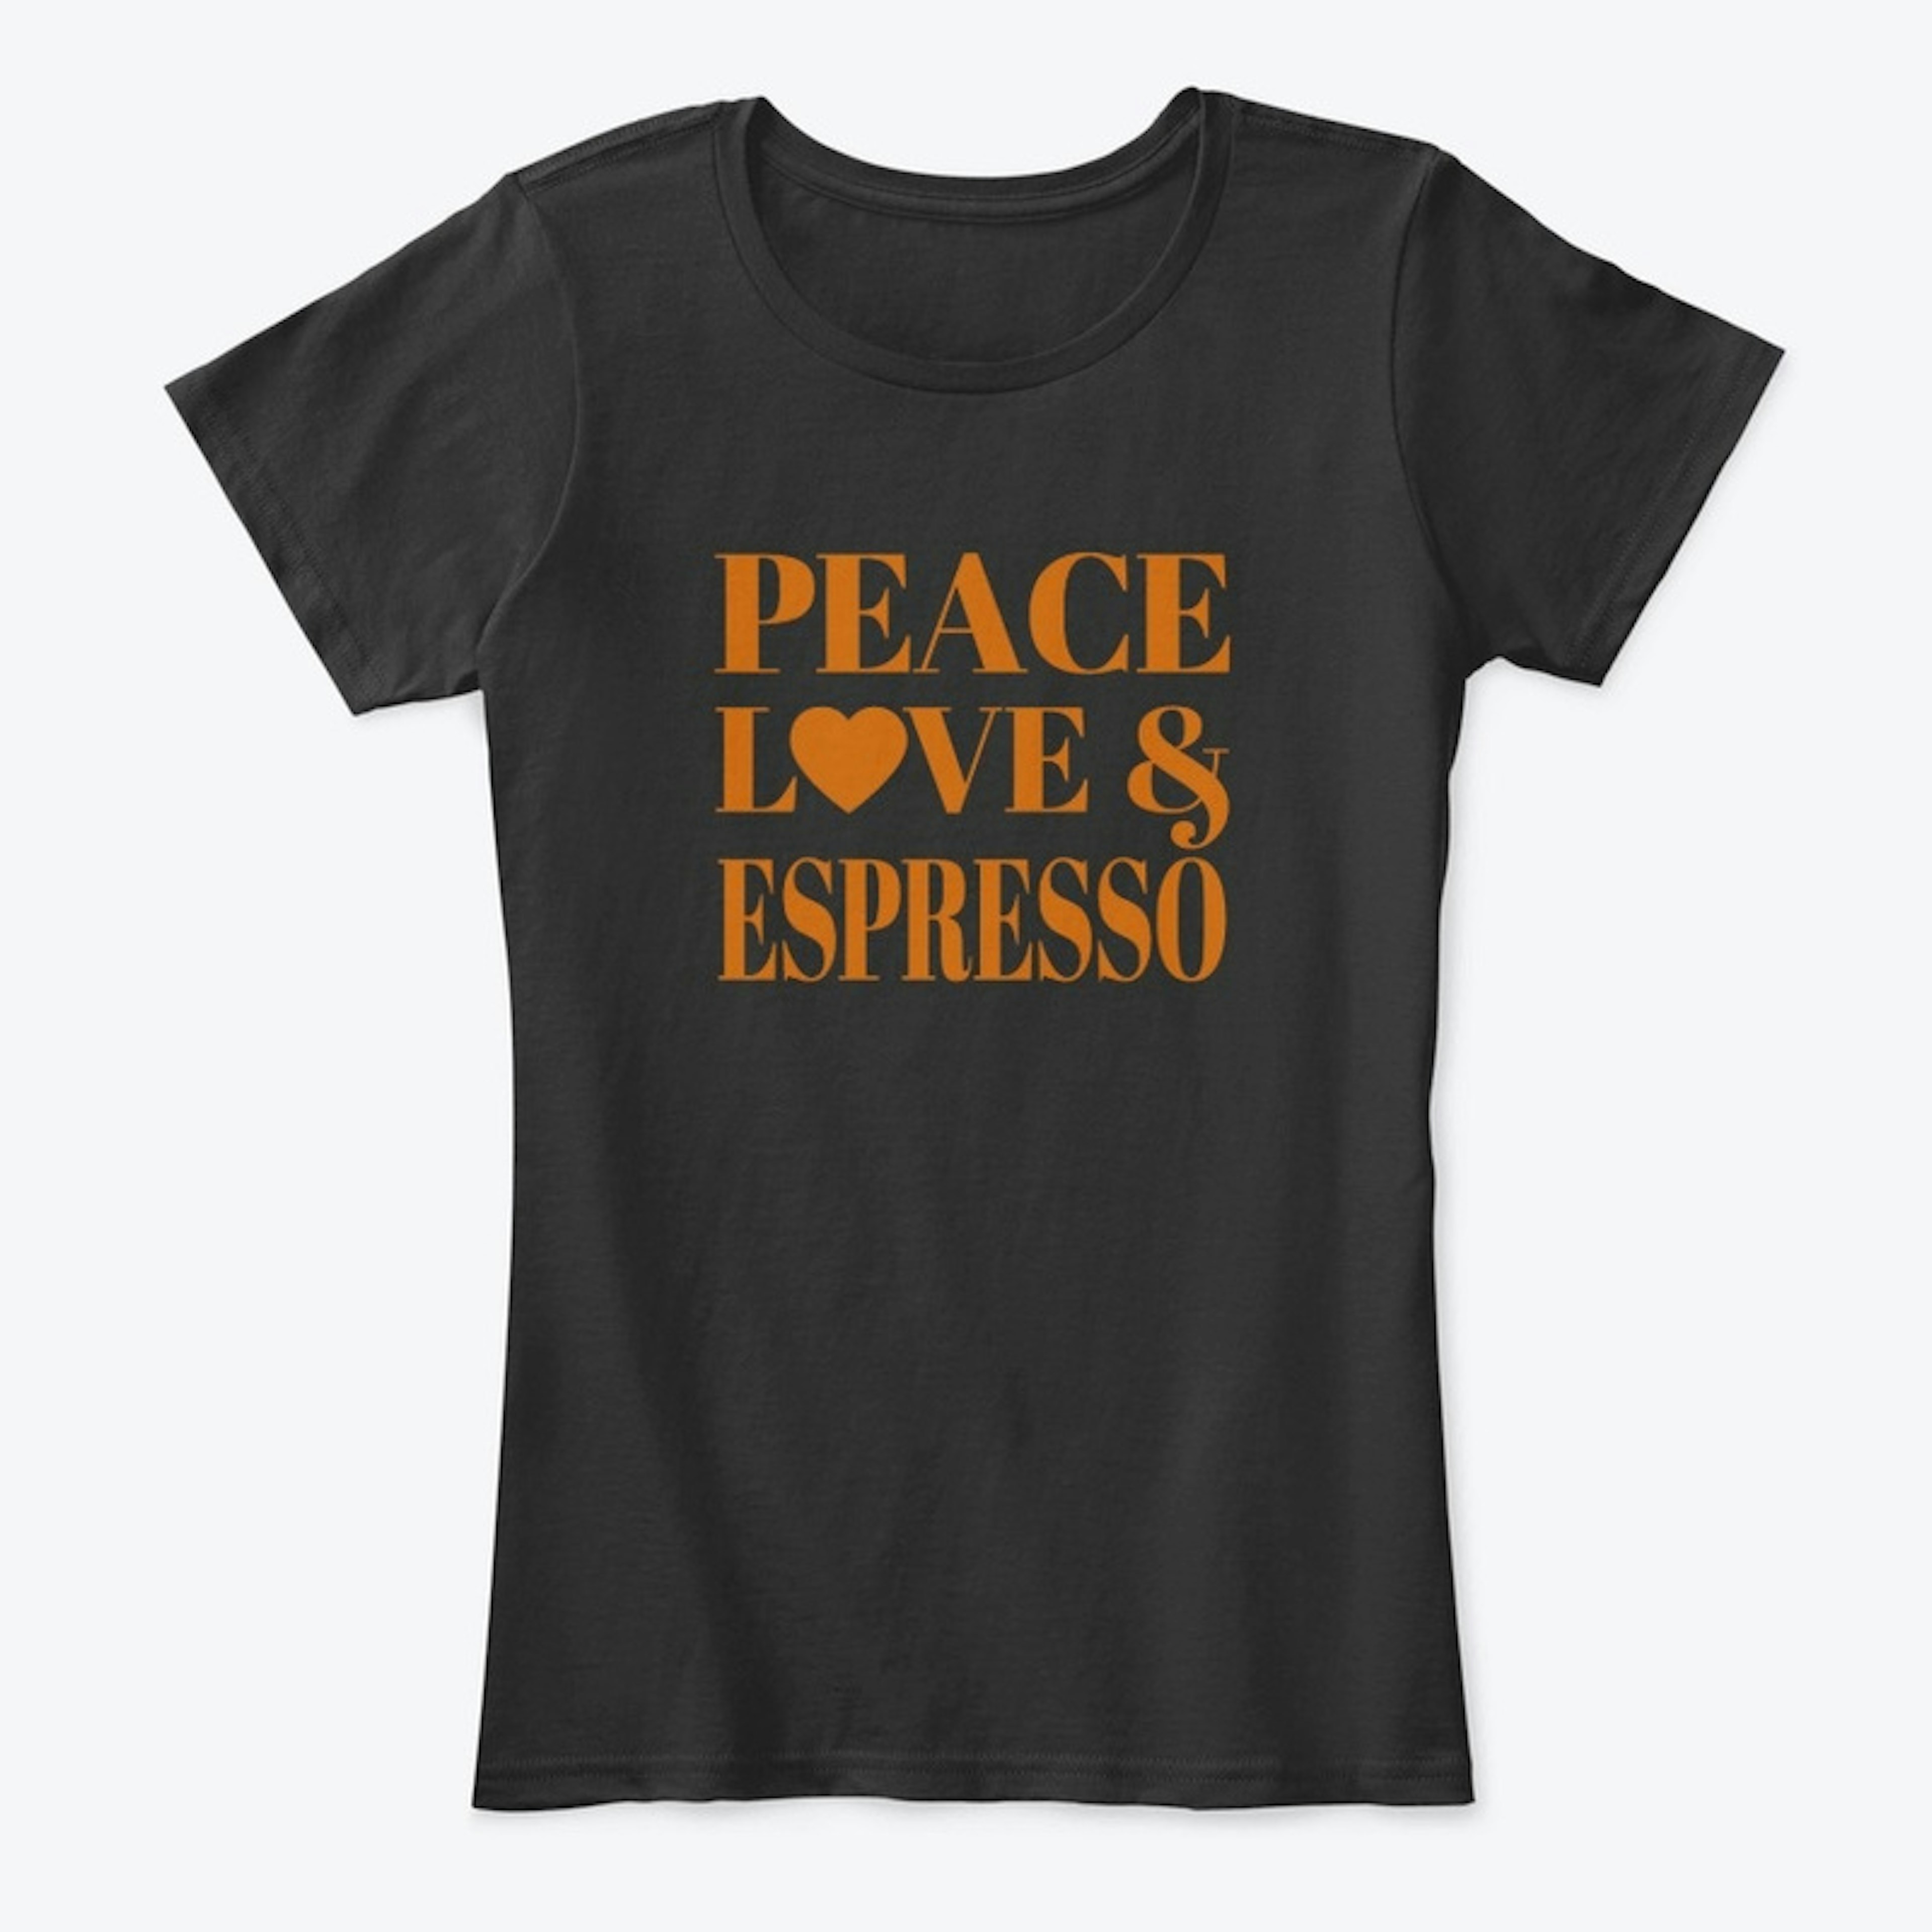 Peace, Love & Espresso